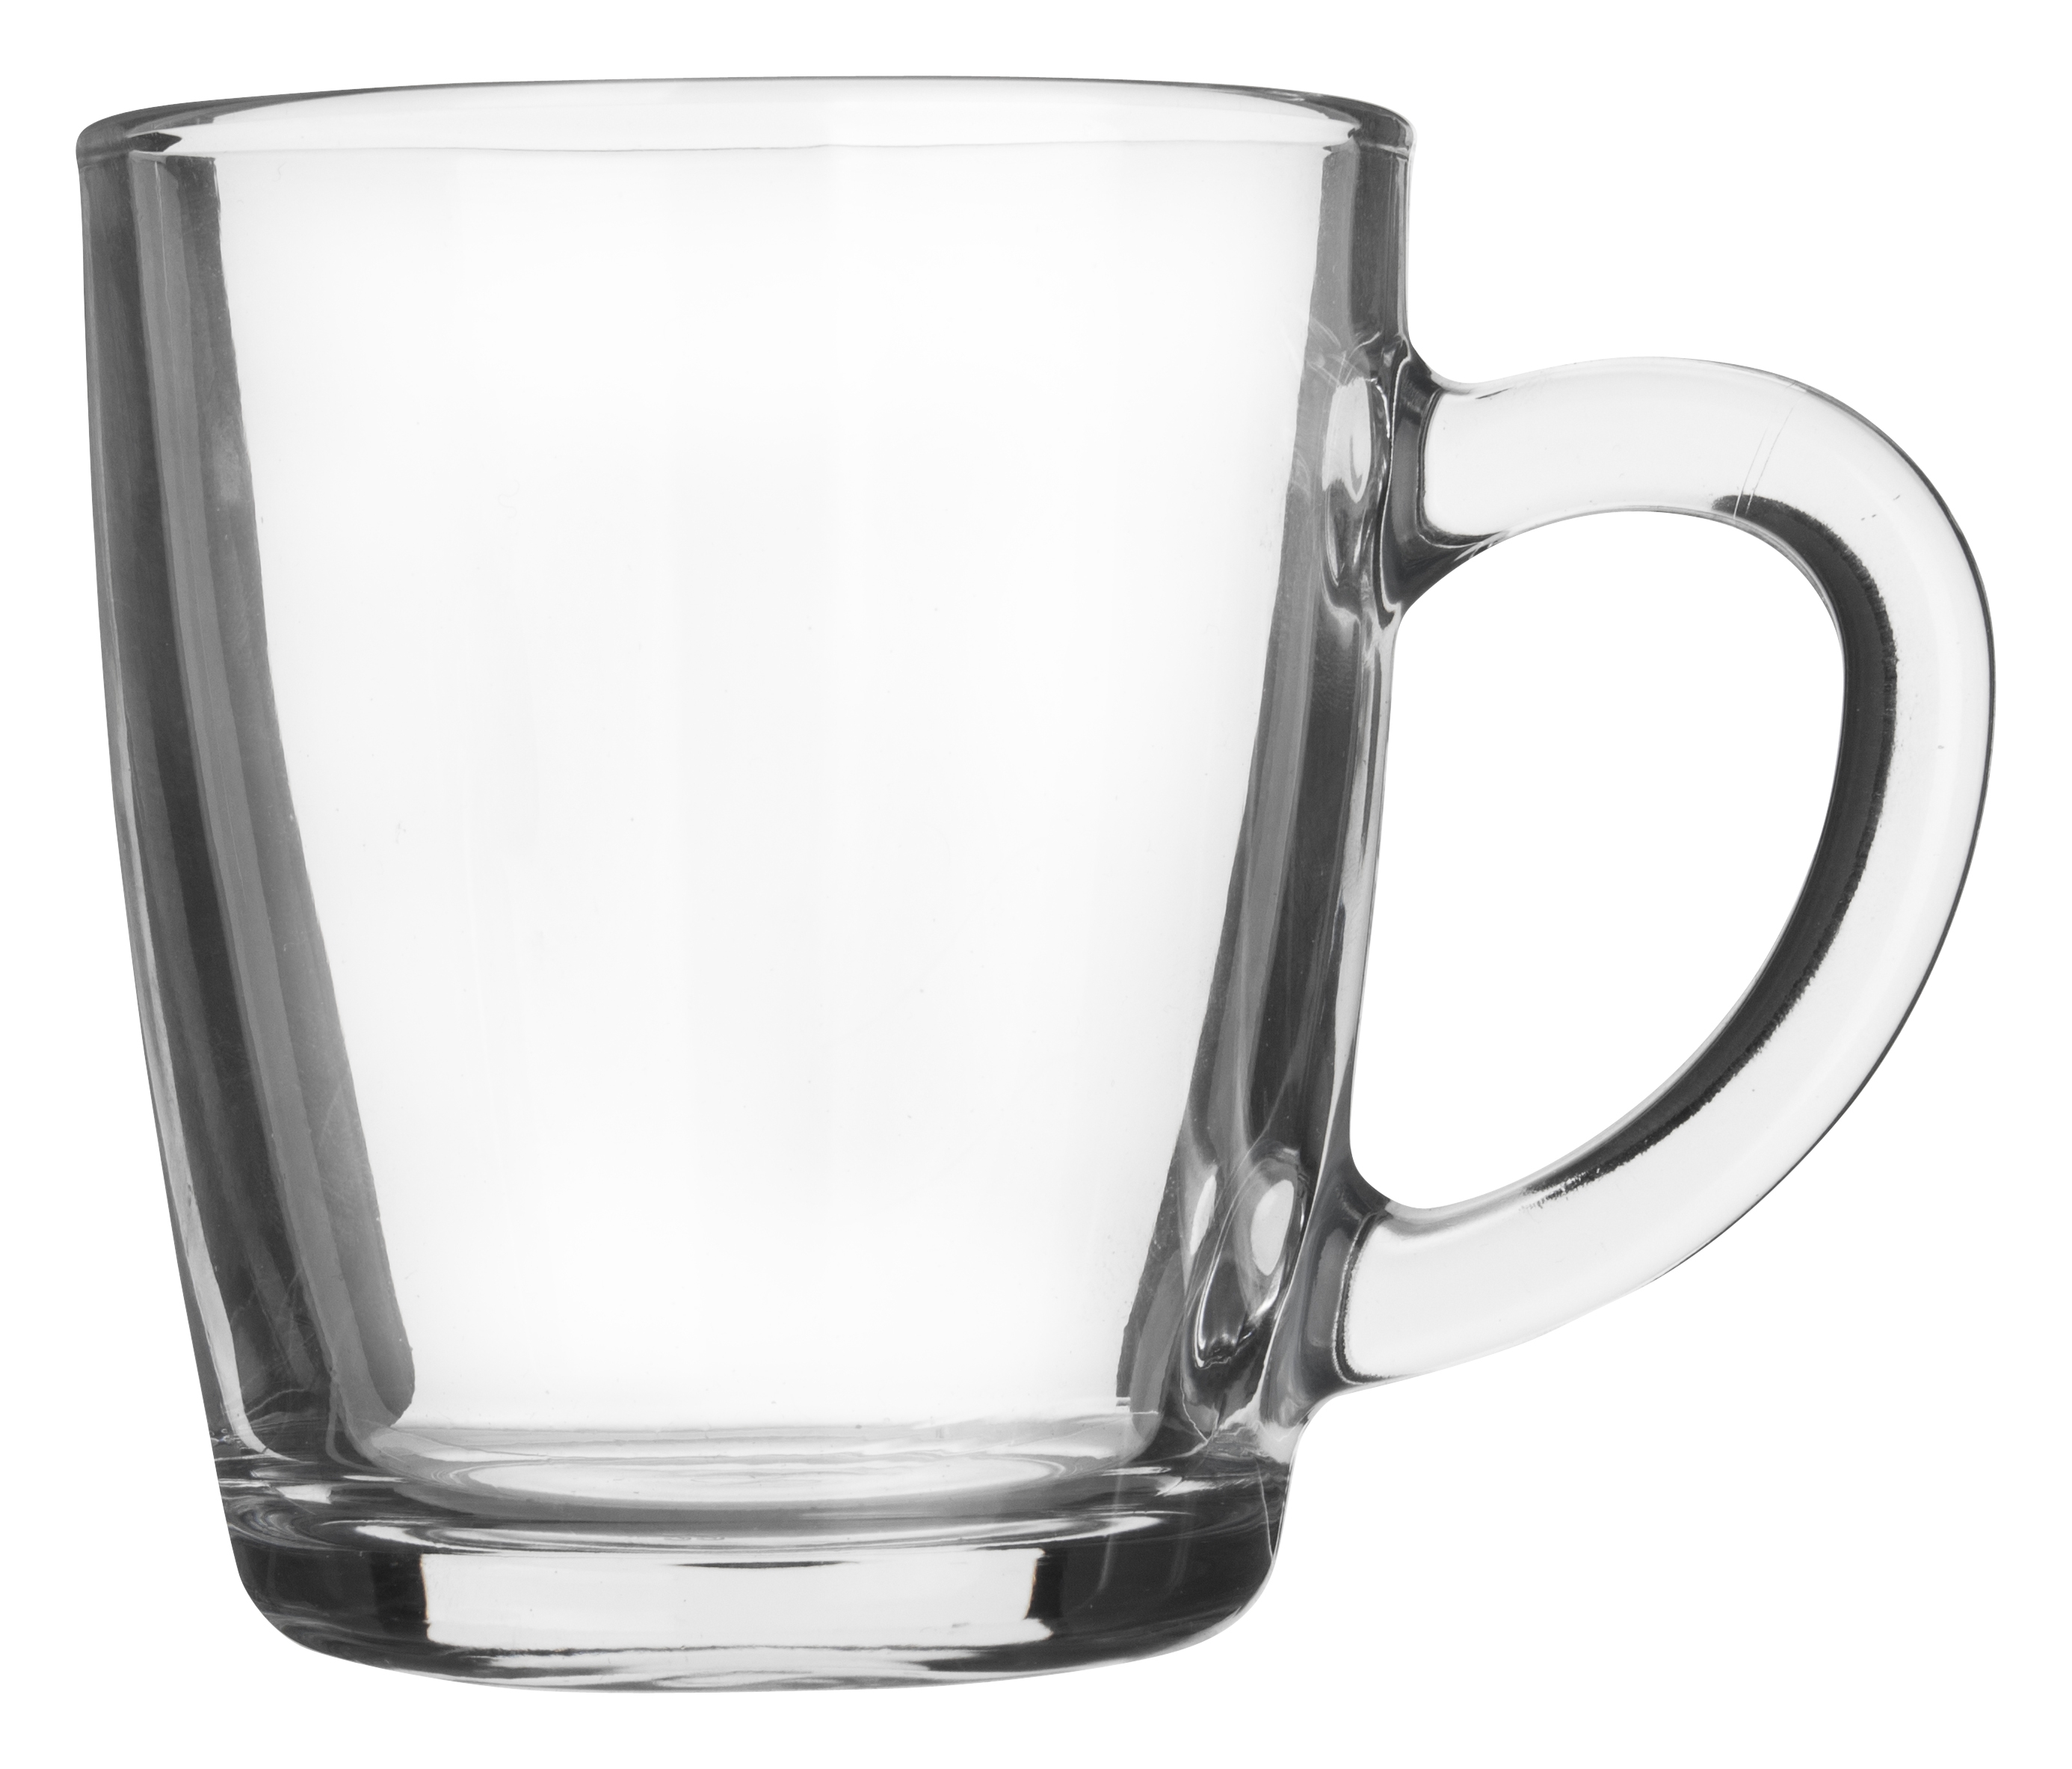 Handled mug Basic, Paabahçe - 340ml (1 pc.)